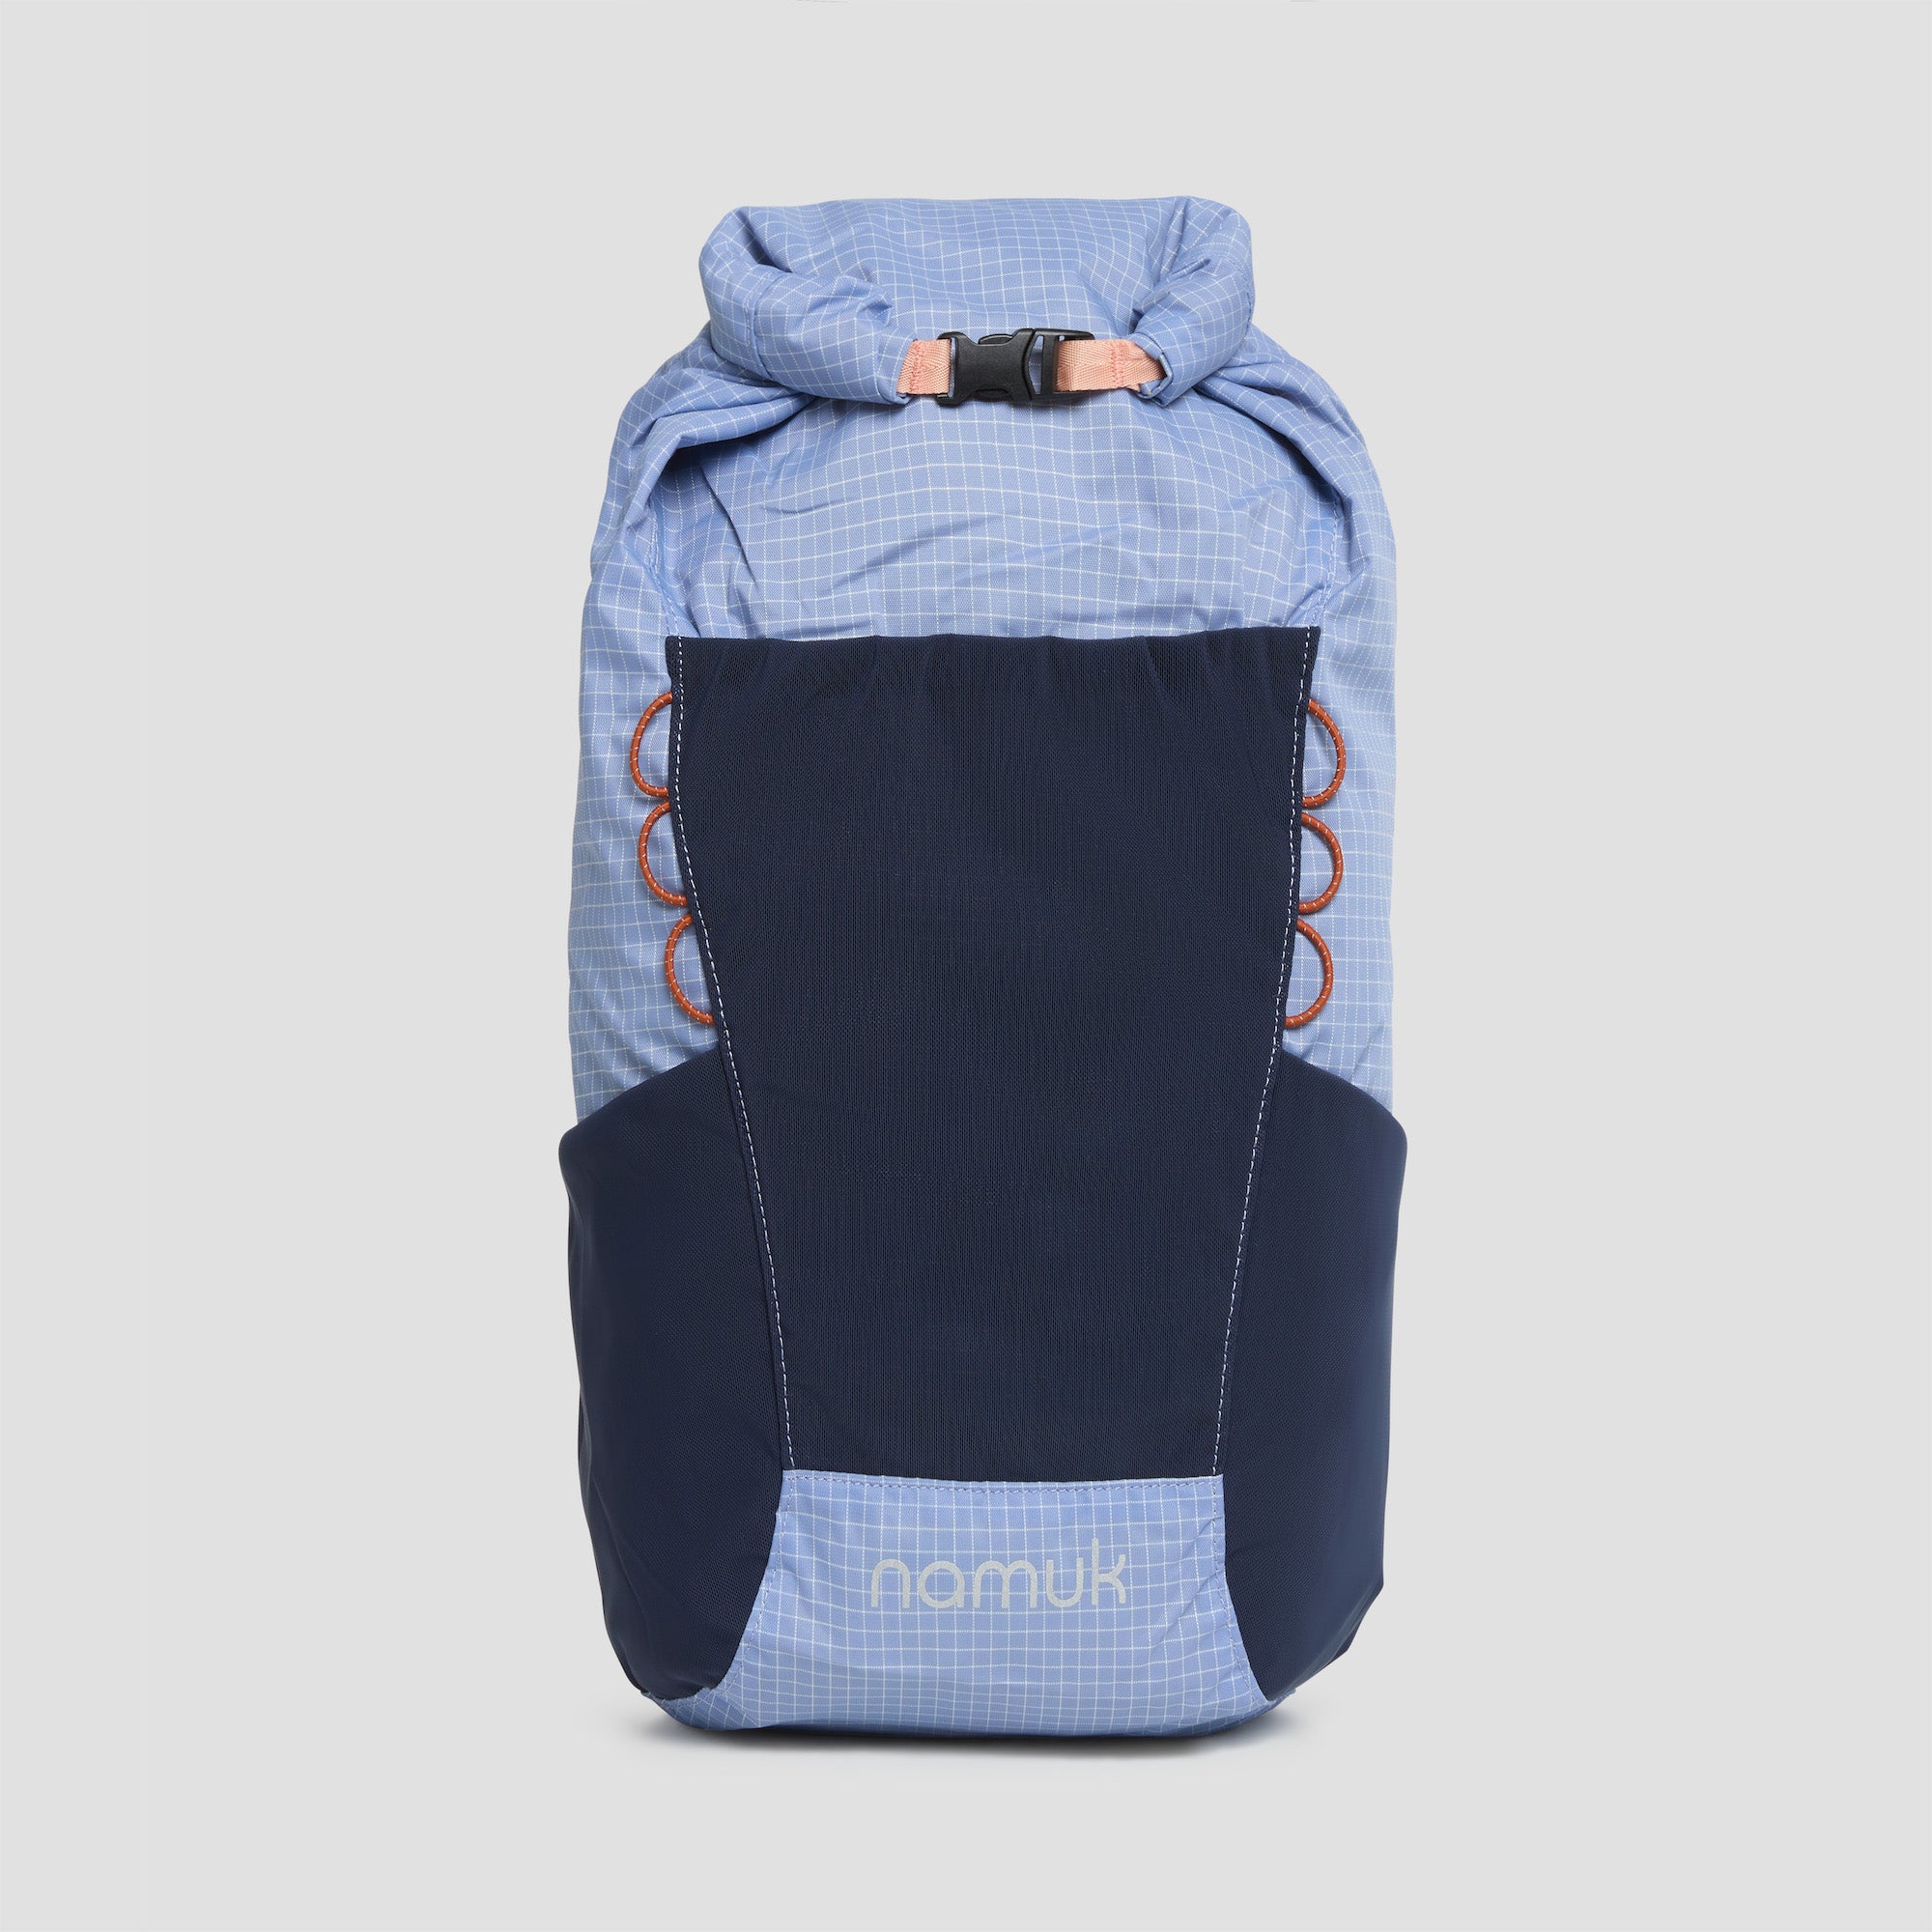 rucksack mit flaschenhalter – Kaufen Sie rucksack mit